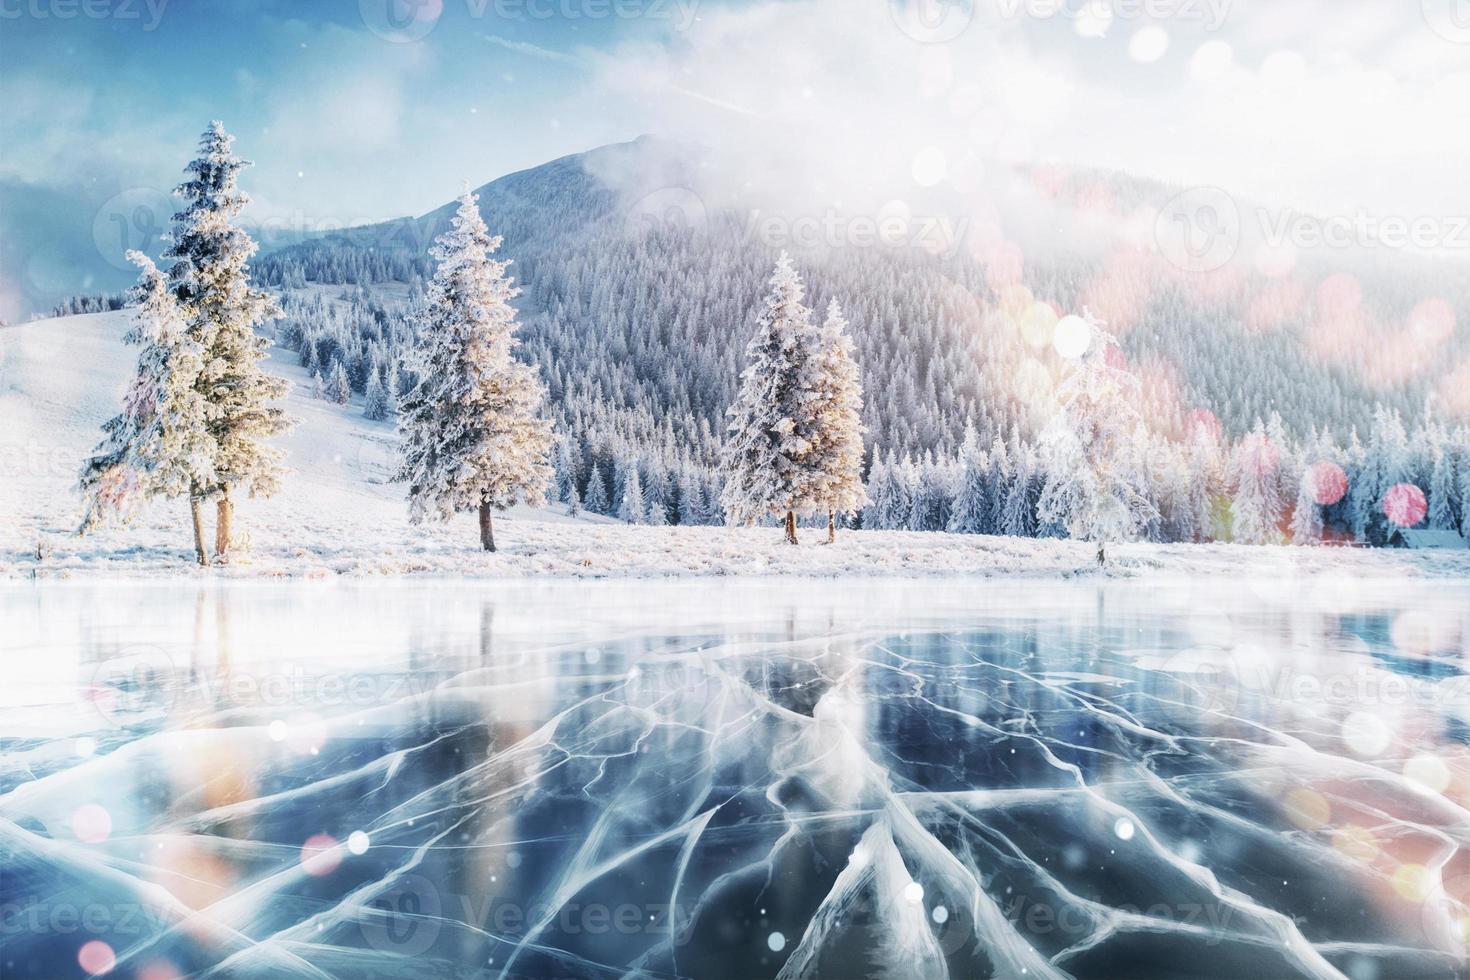 ghiaccio blu e crepe sulla superficie del ghiaccio. lago ghiacciato in montagna d'inverno. sta nevicando. le colline dei pini. inverno. carpazi ucraina europa foto